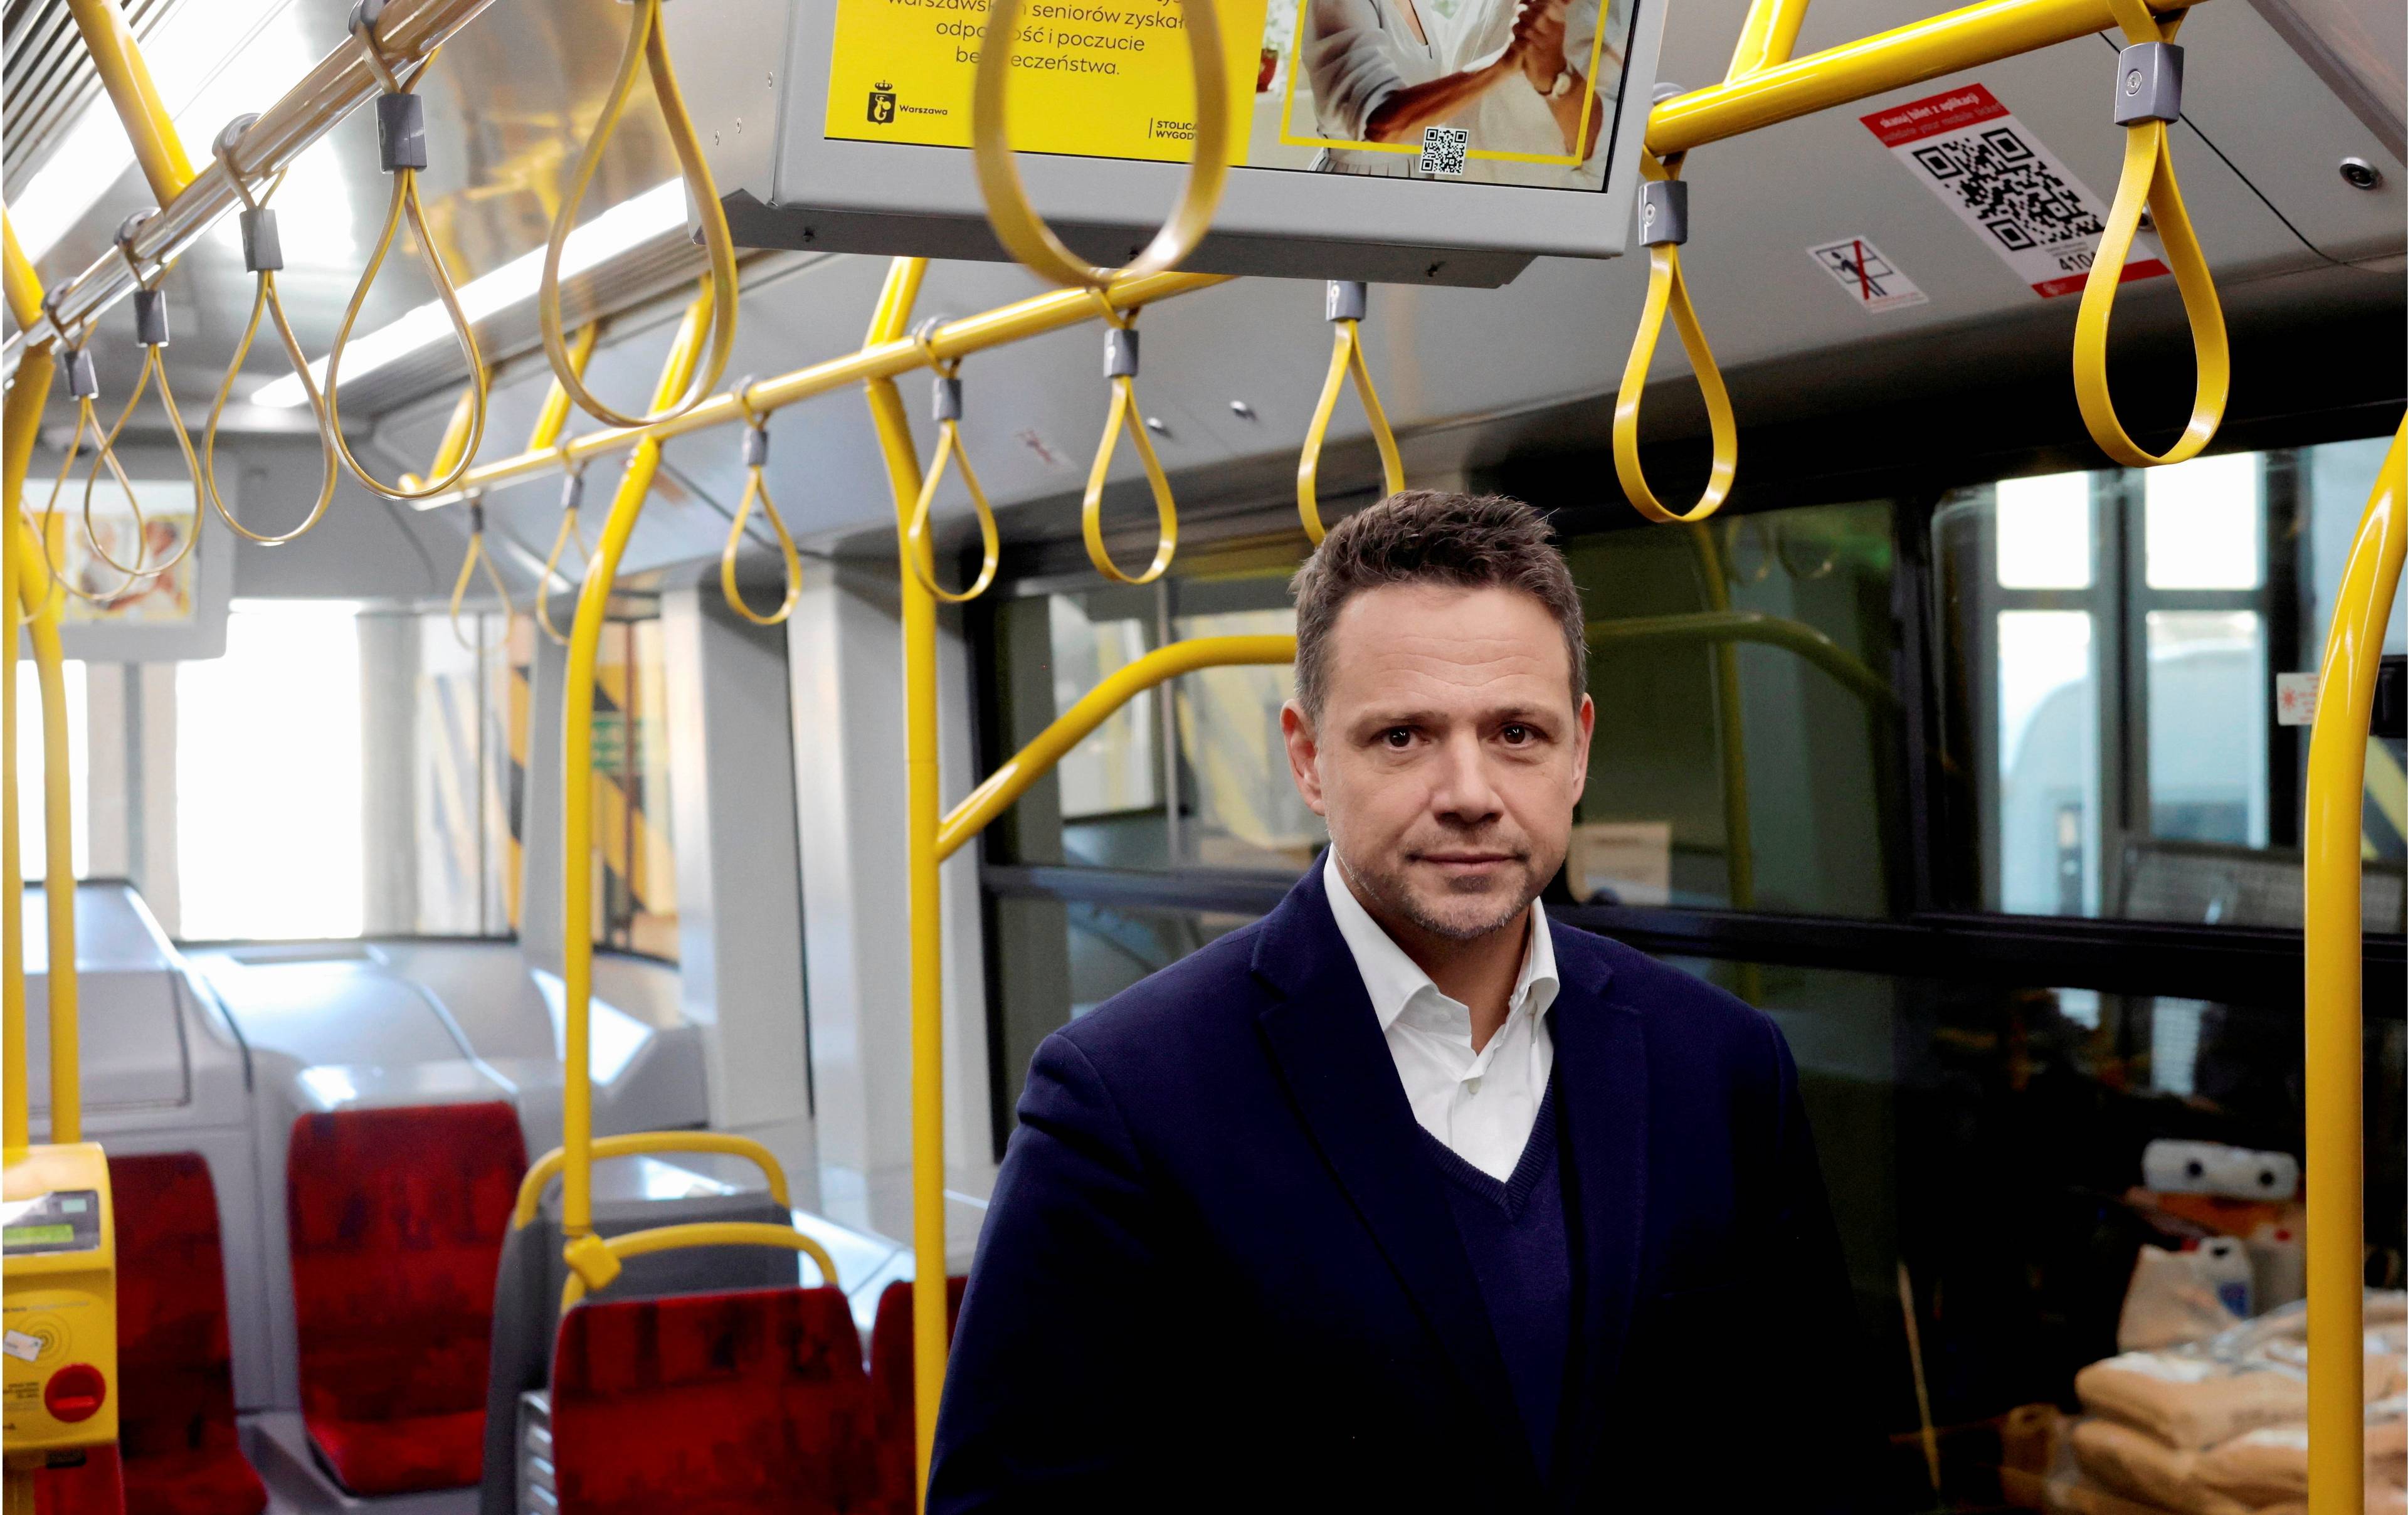 Rafał Trzaskowski stoi w tramwaju. Nad głową ma żółte uchwyty dla pasażerów